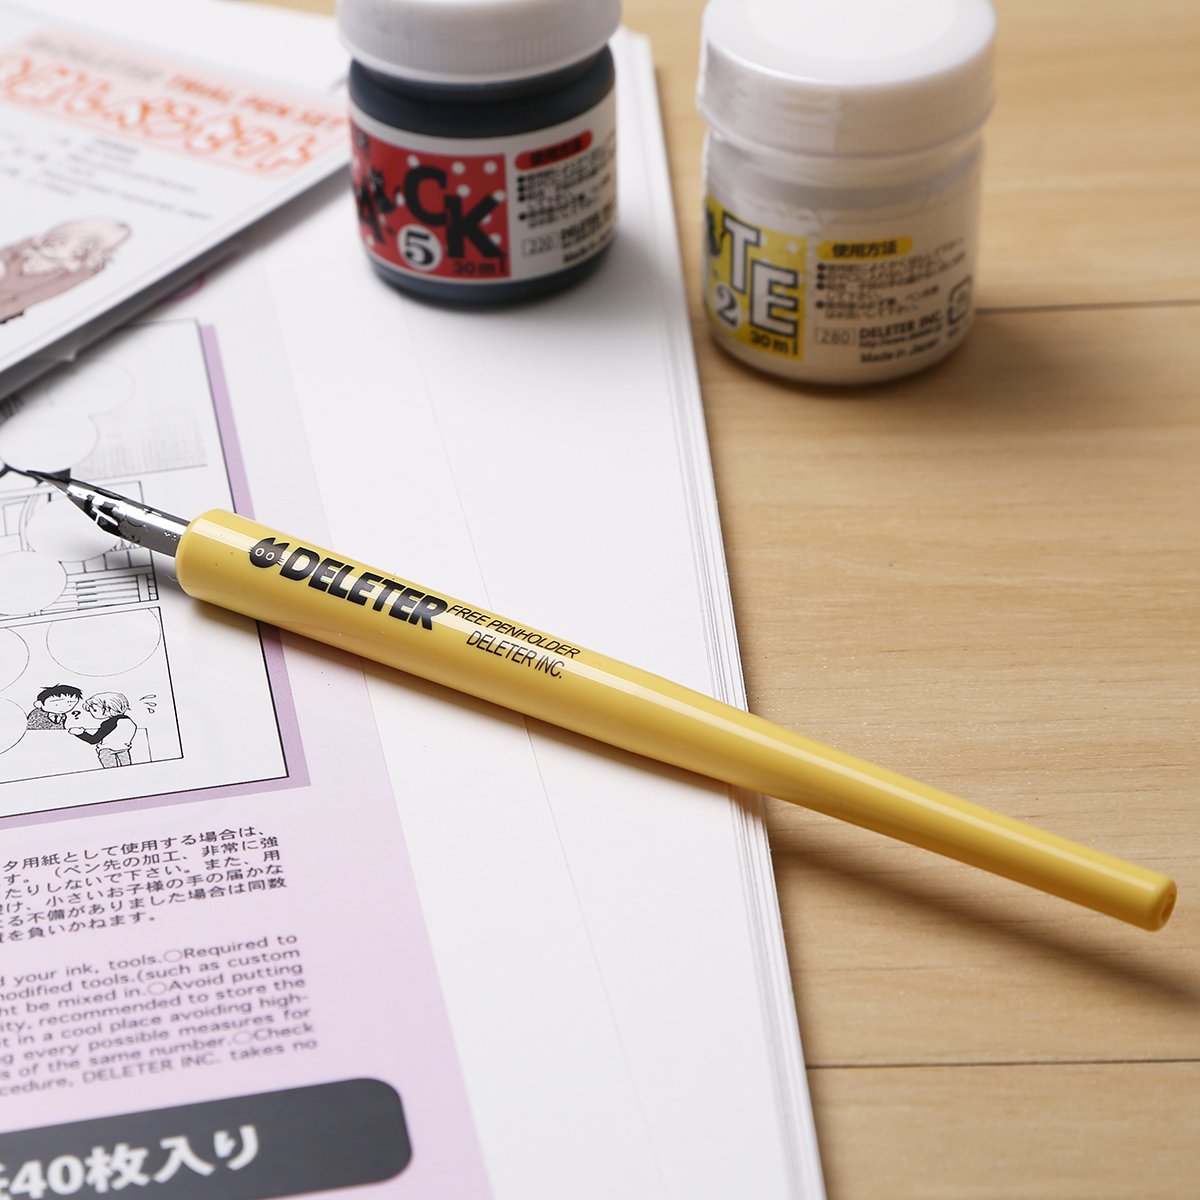 Deleter Manga Comic Pen G-Pen 10pcs — Harajuku Culture Japan